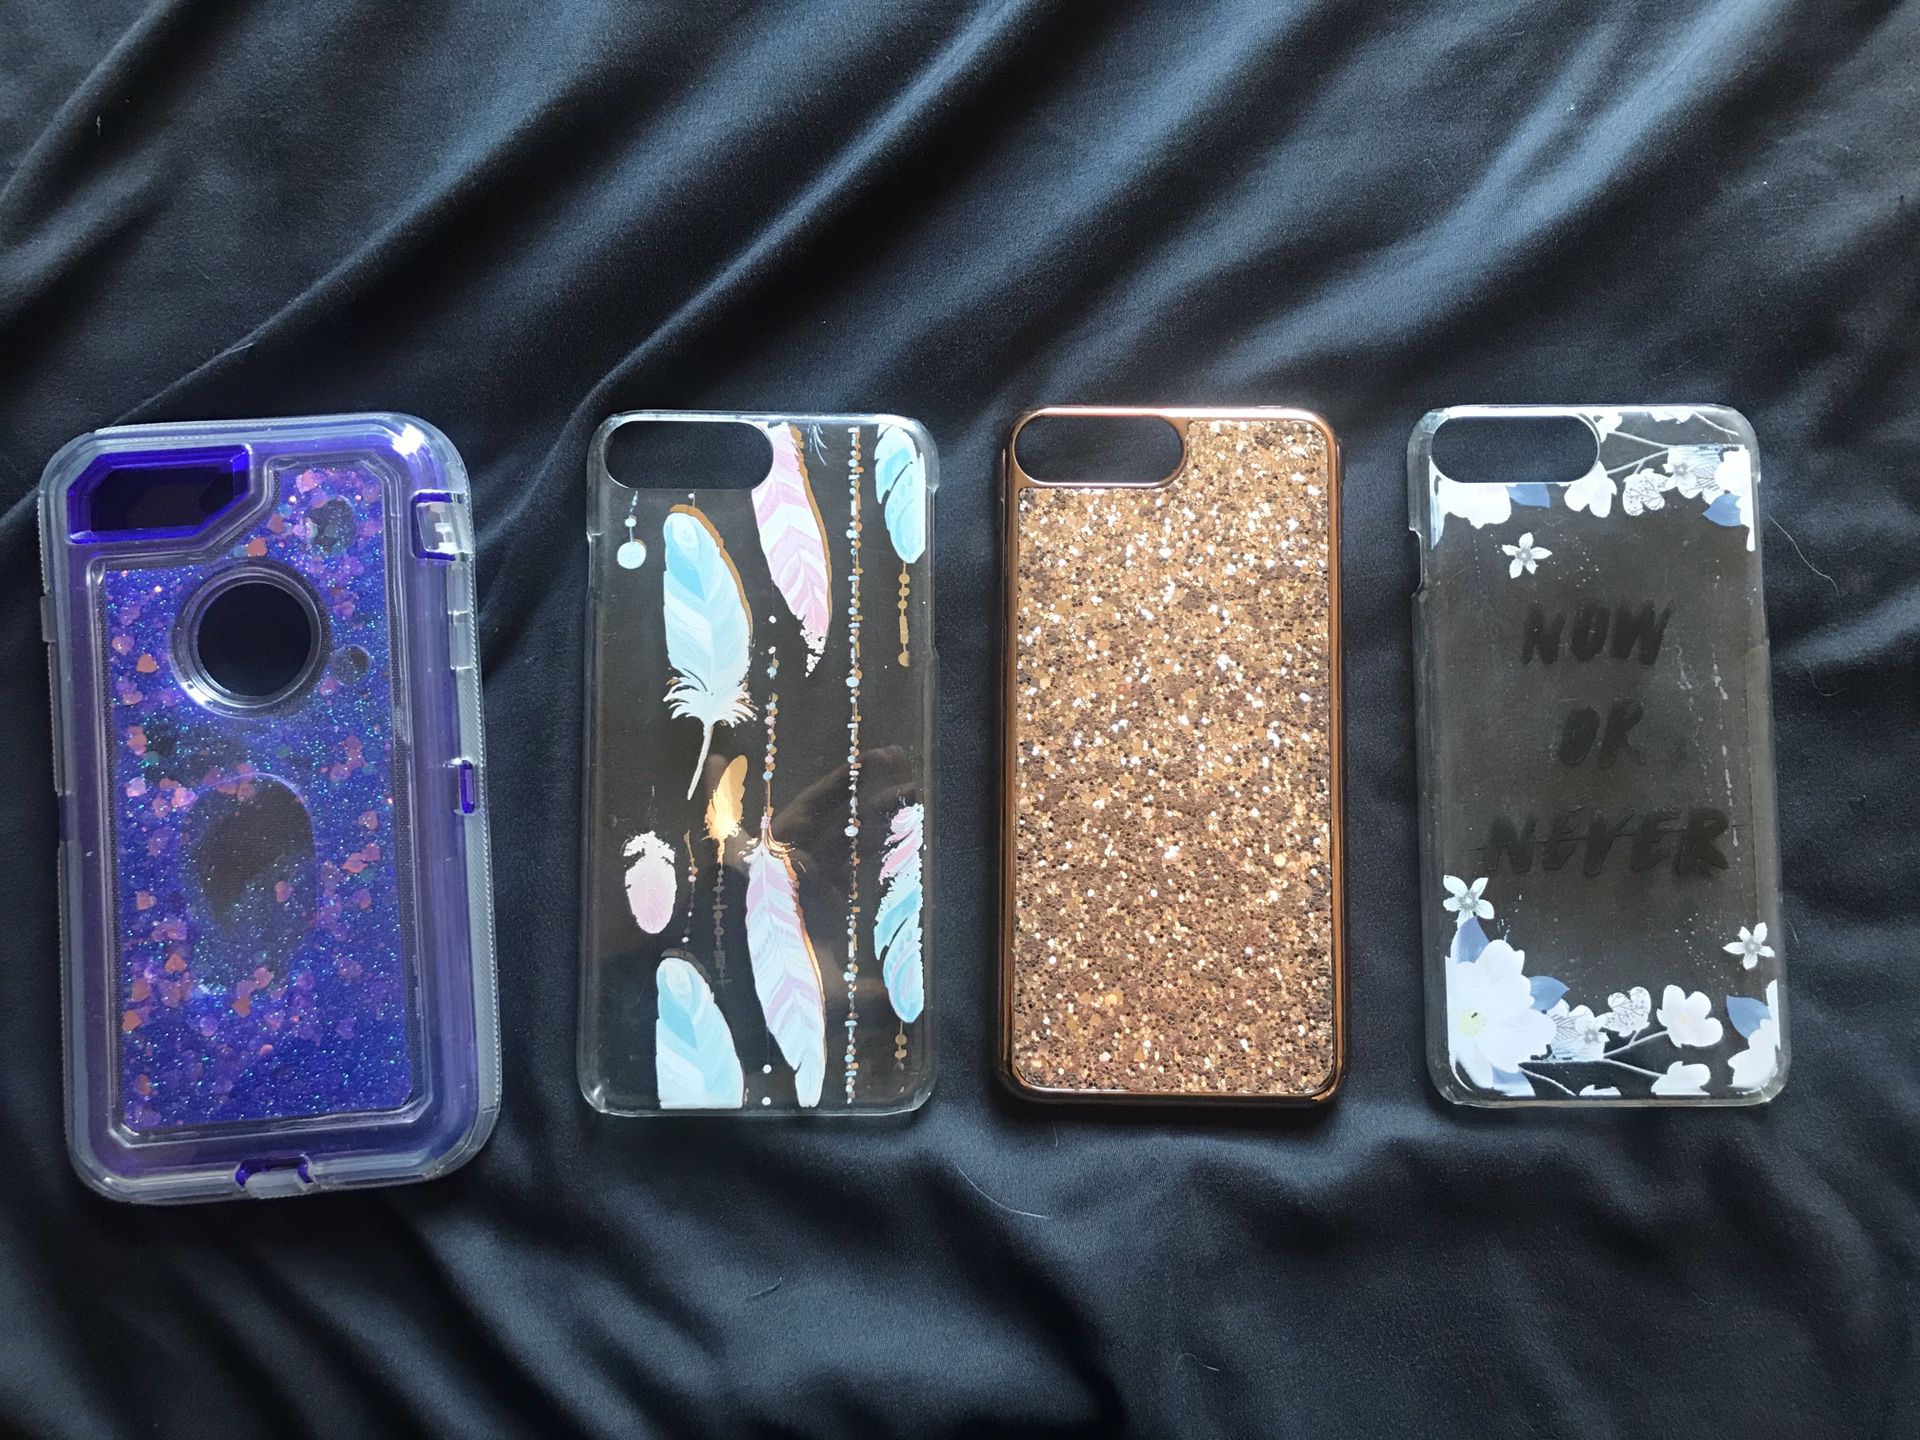 iphone 6/6s/7/8 plus cases